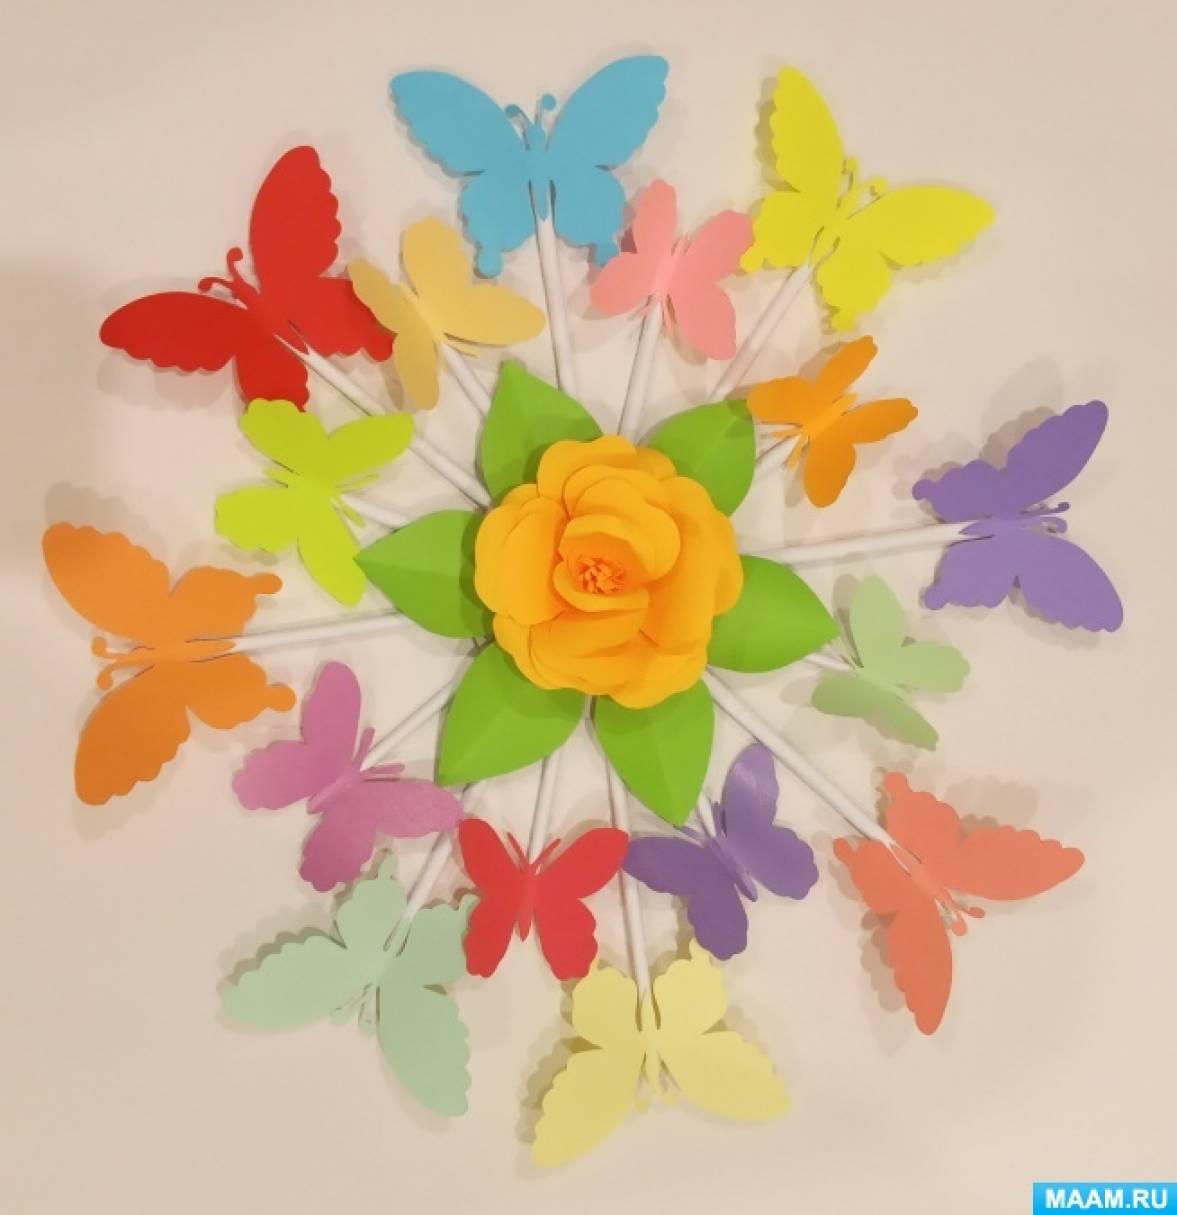 Мастер-класс «Декоративное панно «Бабочки» с использованием цветной бумаги